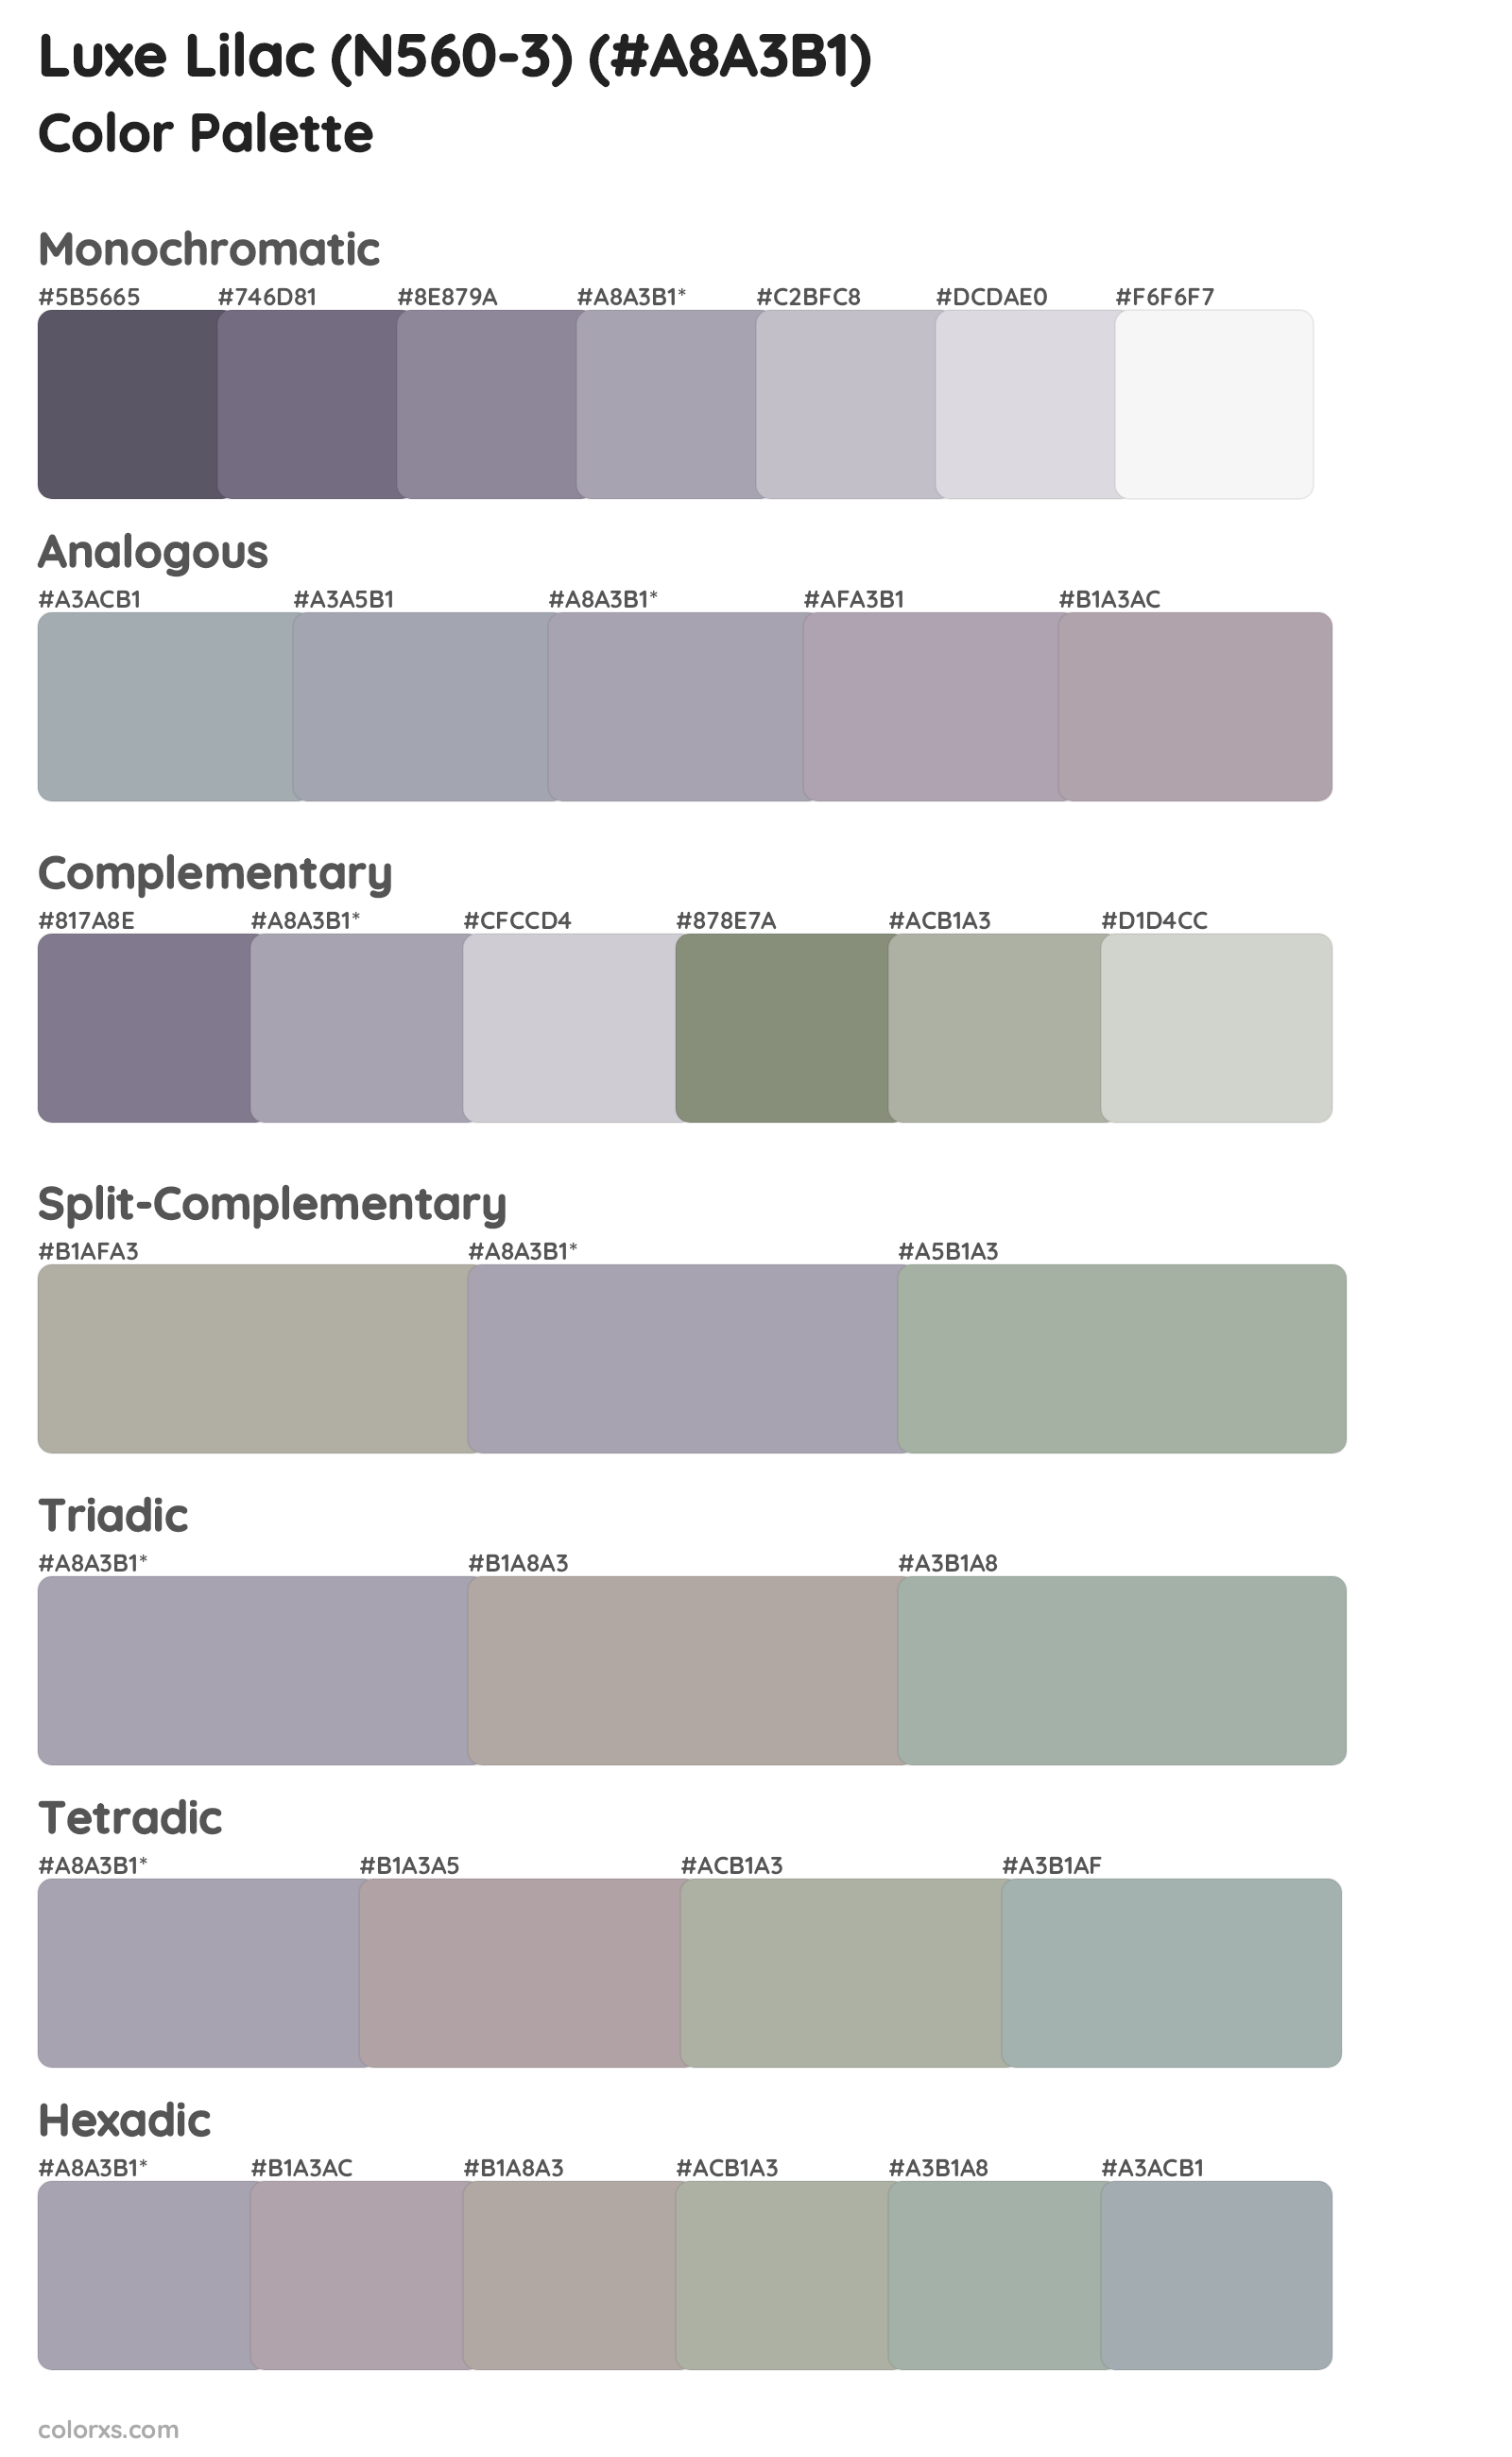 Luxe Lilac (N560-3) Color Scheme Palettes